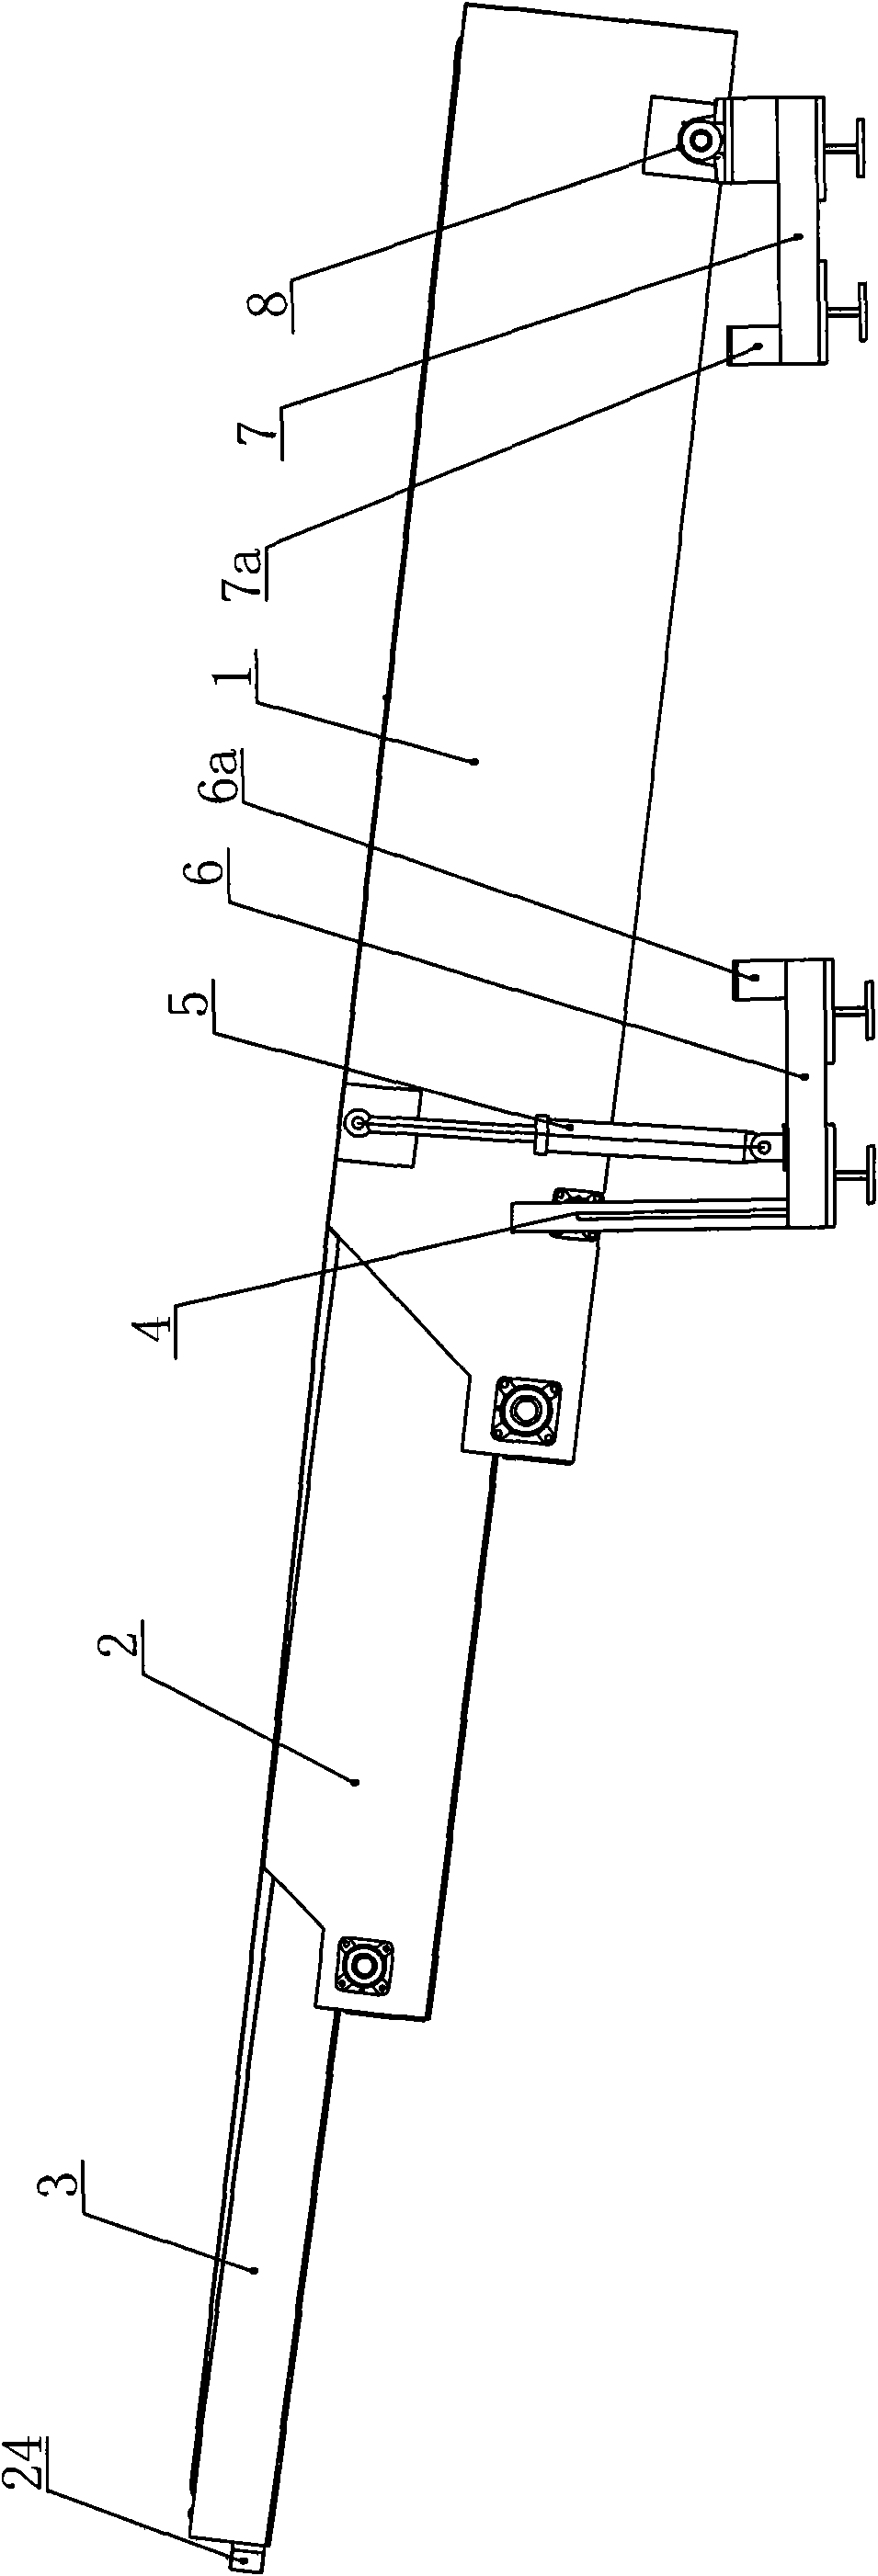 Telescopic bidirectional loading and unloading conveyor